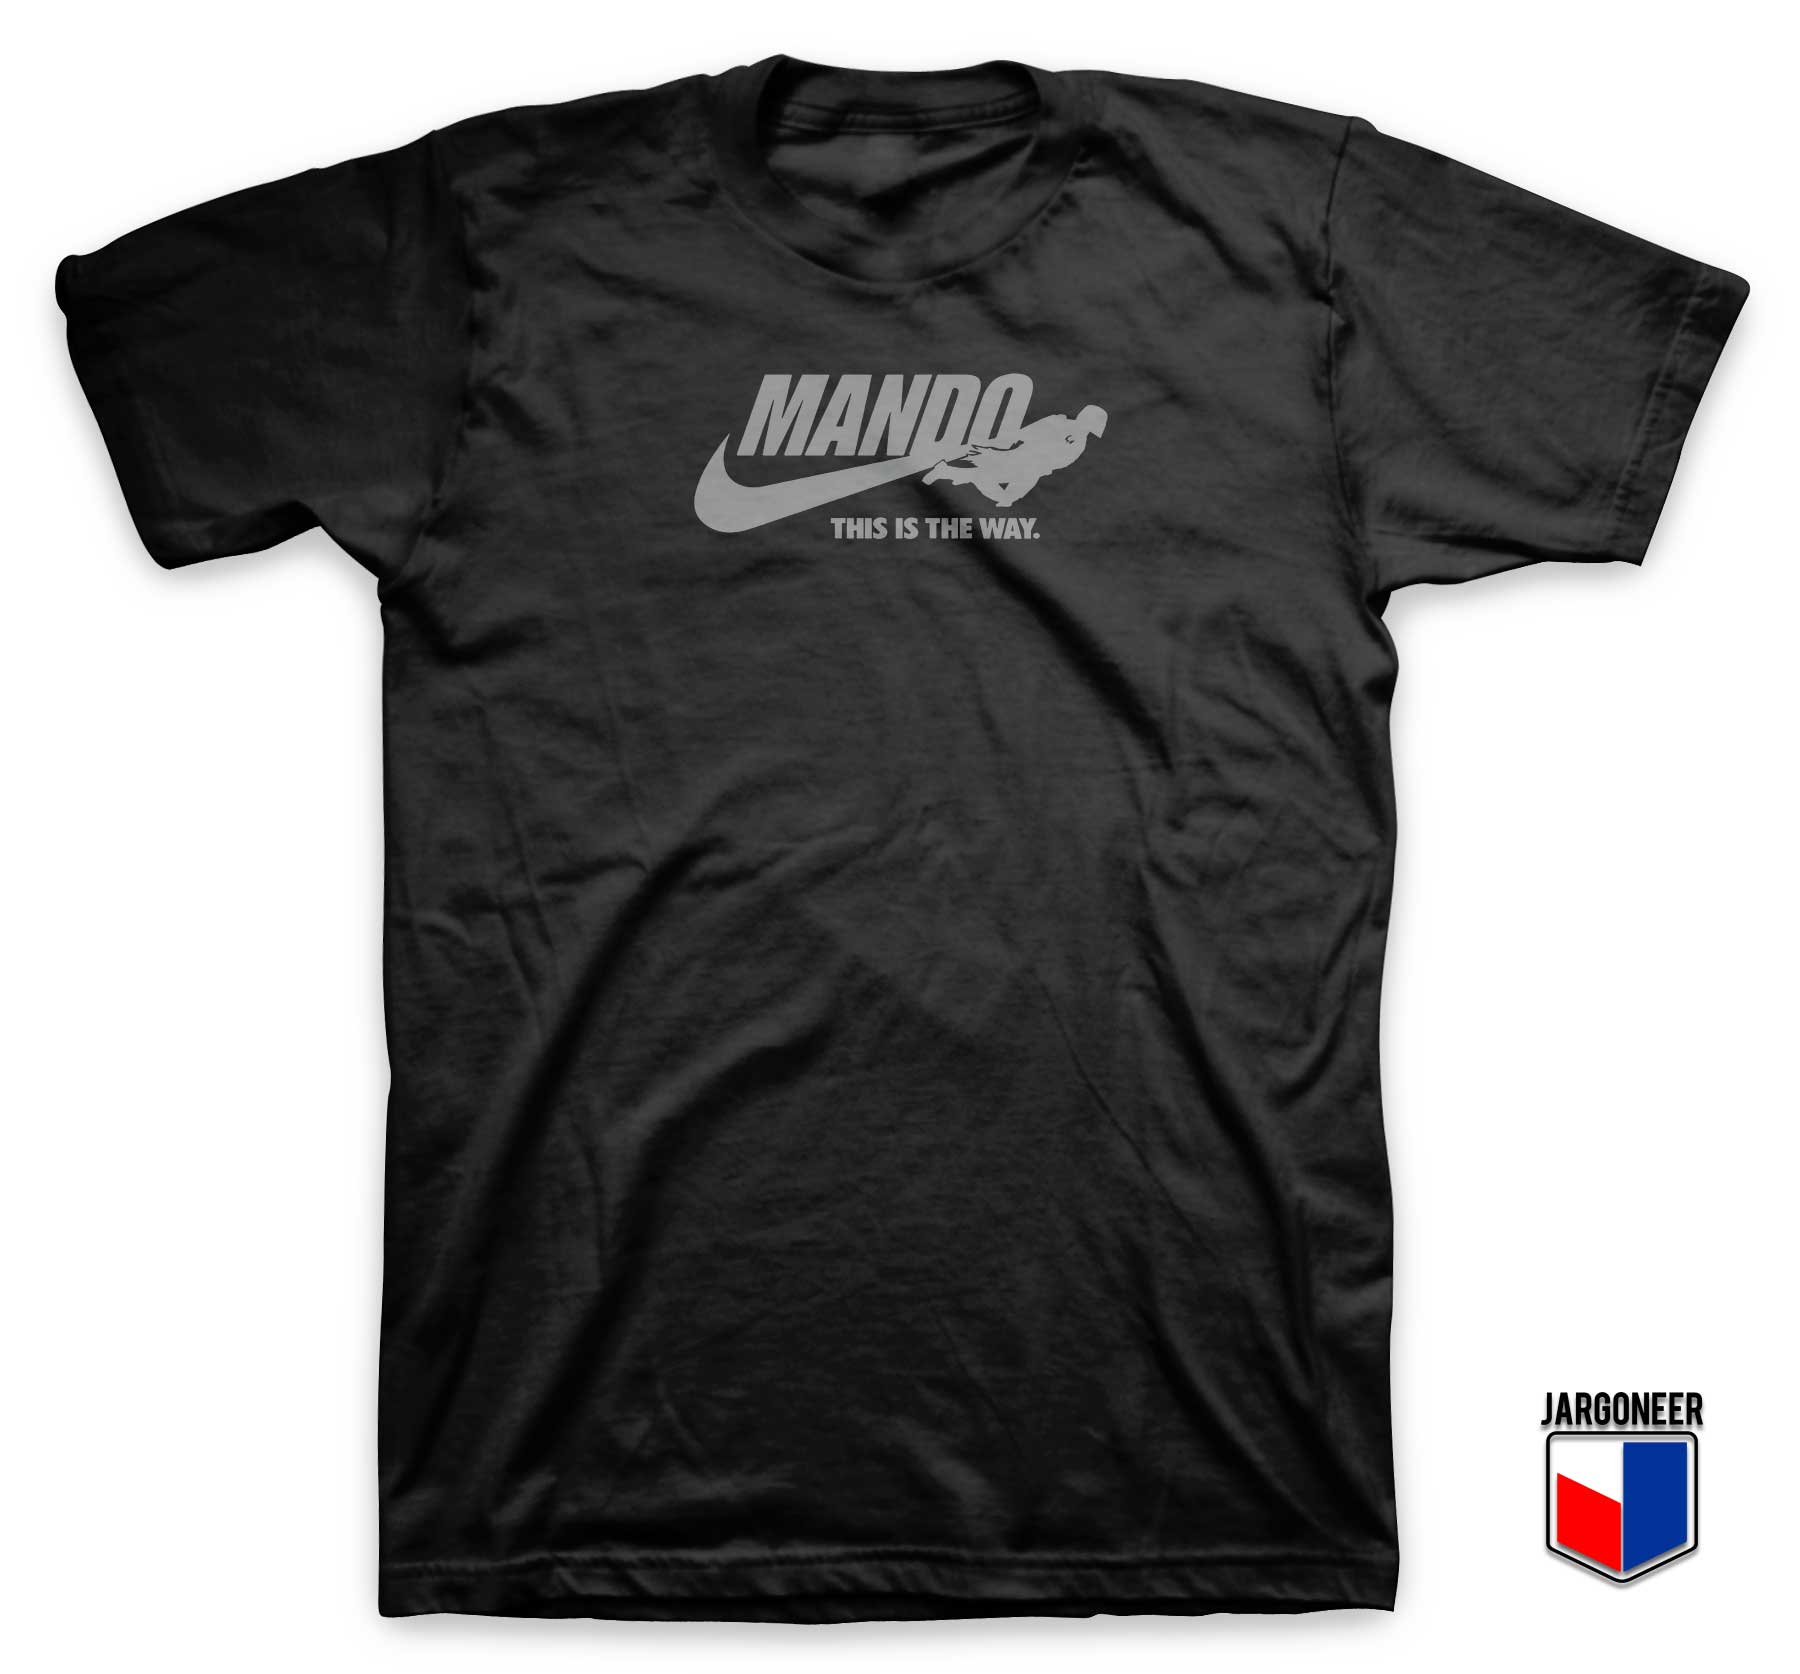 Just Mando It T Shirt - Shop Unique Graphic Cool Shirt Designs